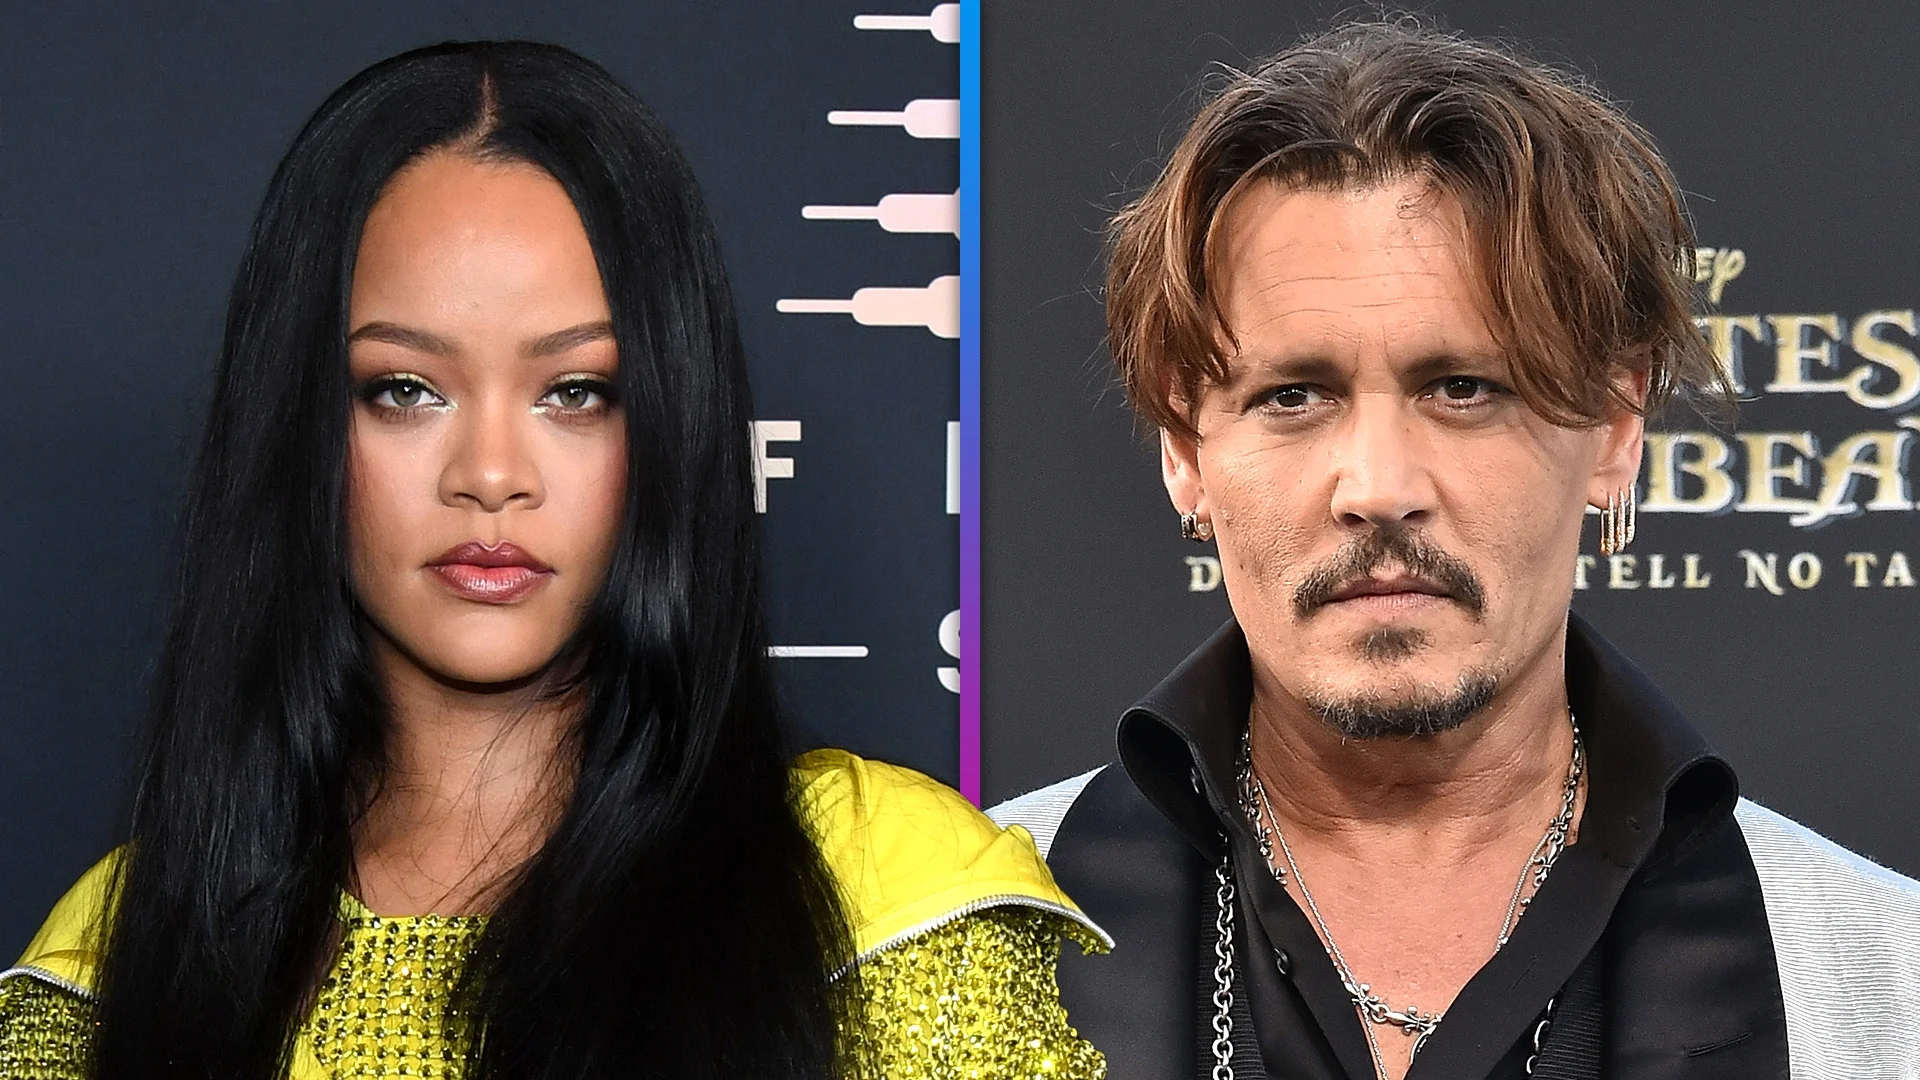 Rihanna faces backlash after casting Johnny Depp for Fenty runway show